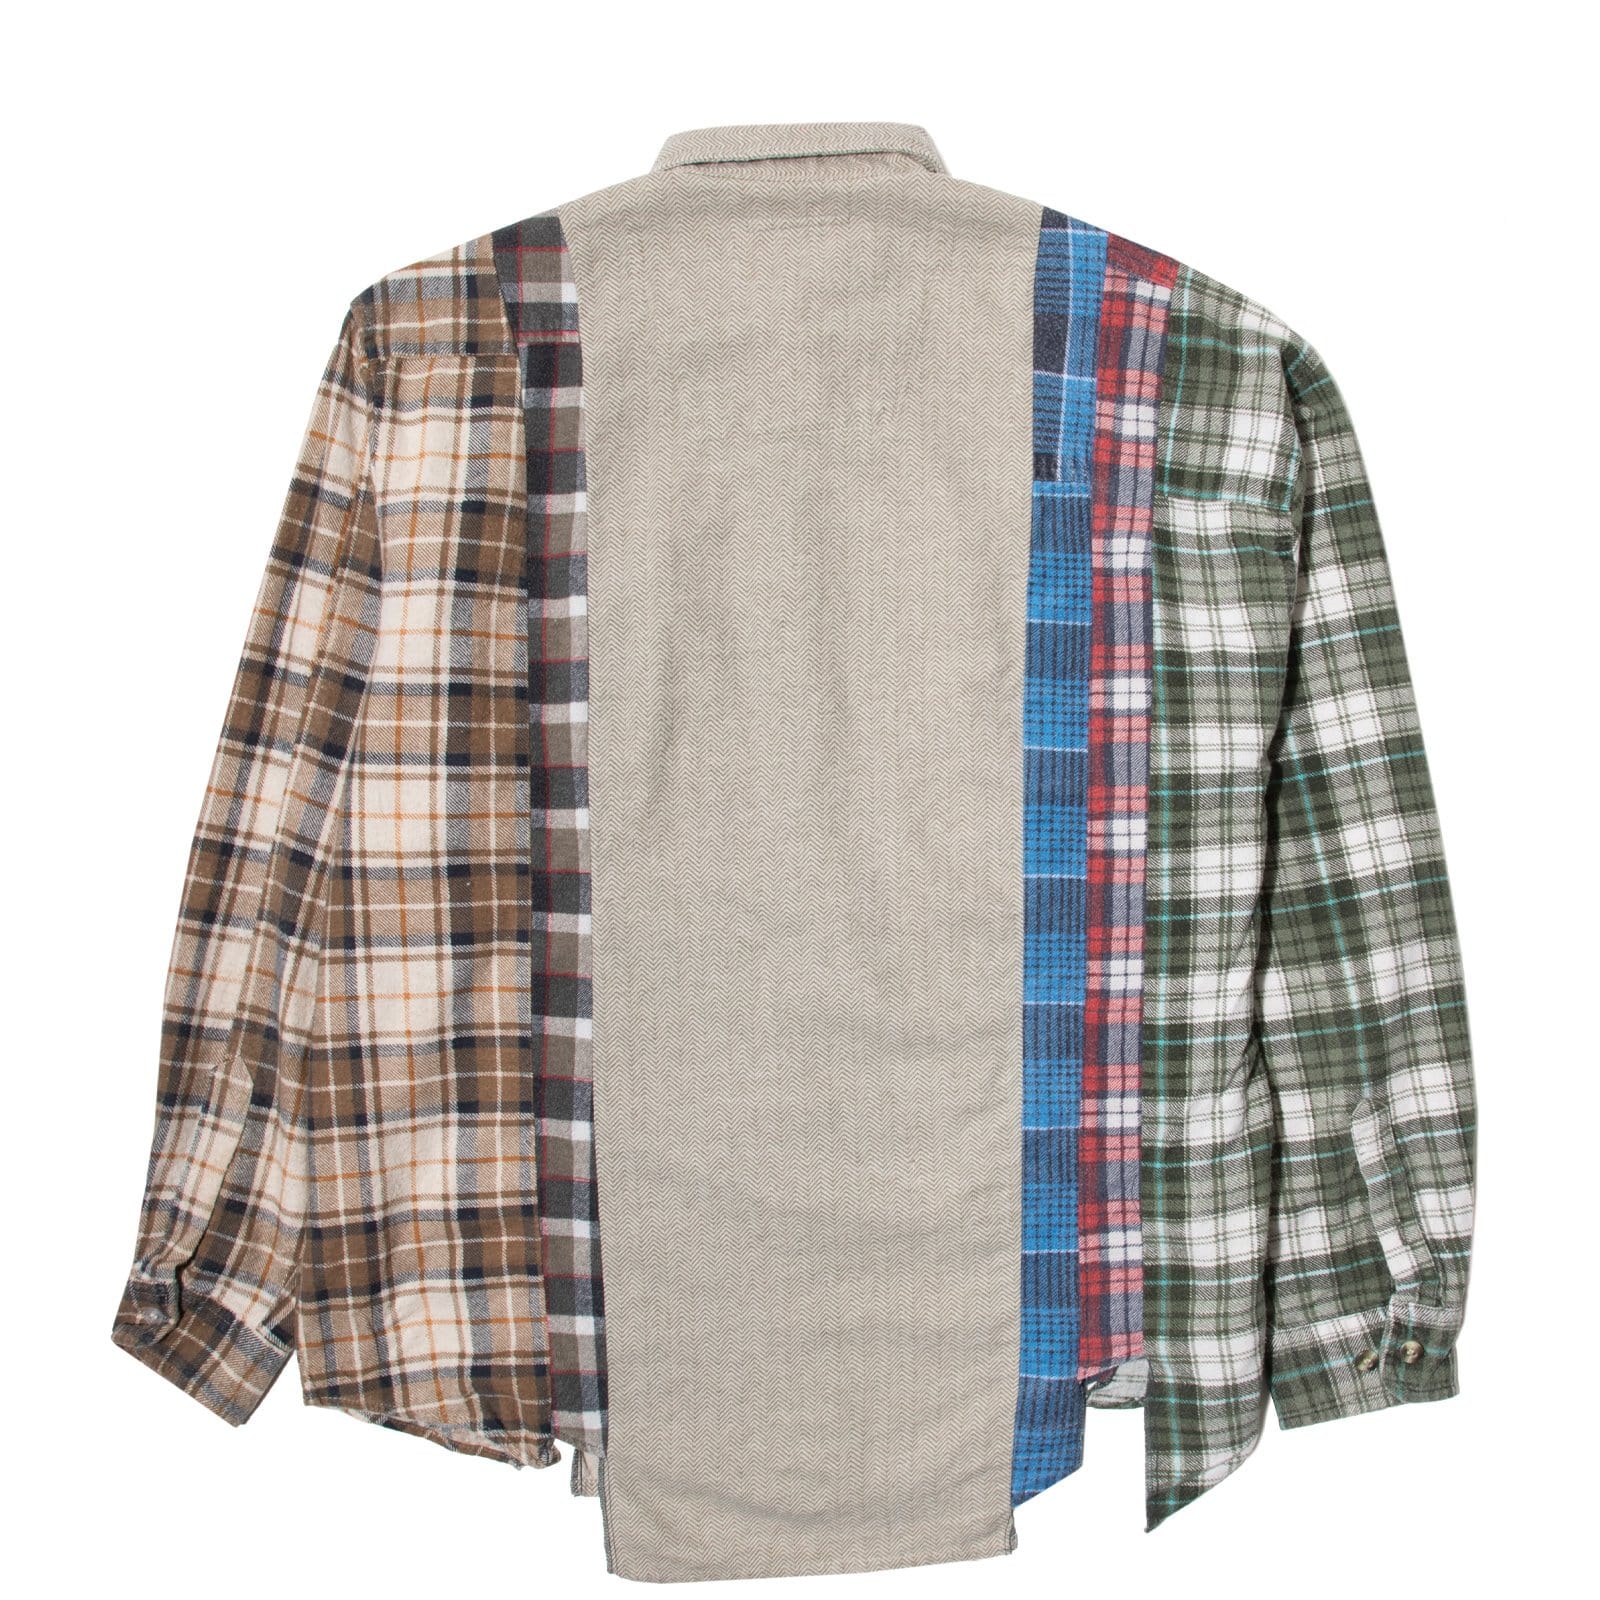 Needles Shirts ASSORTED / XL FLANNEL SHIRT - 7 CUTS SHIRT SS20 24